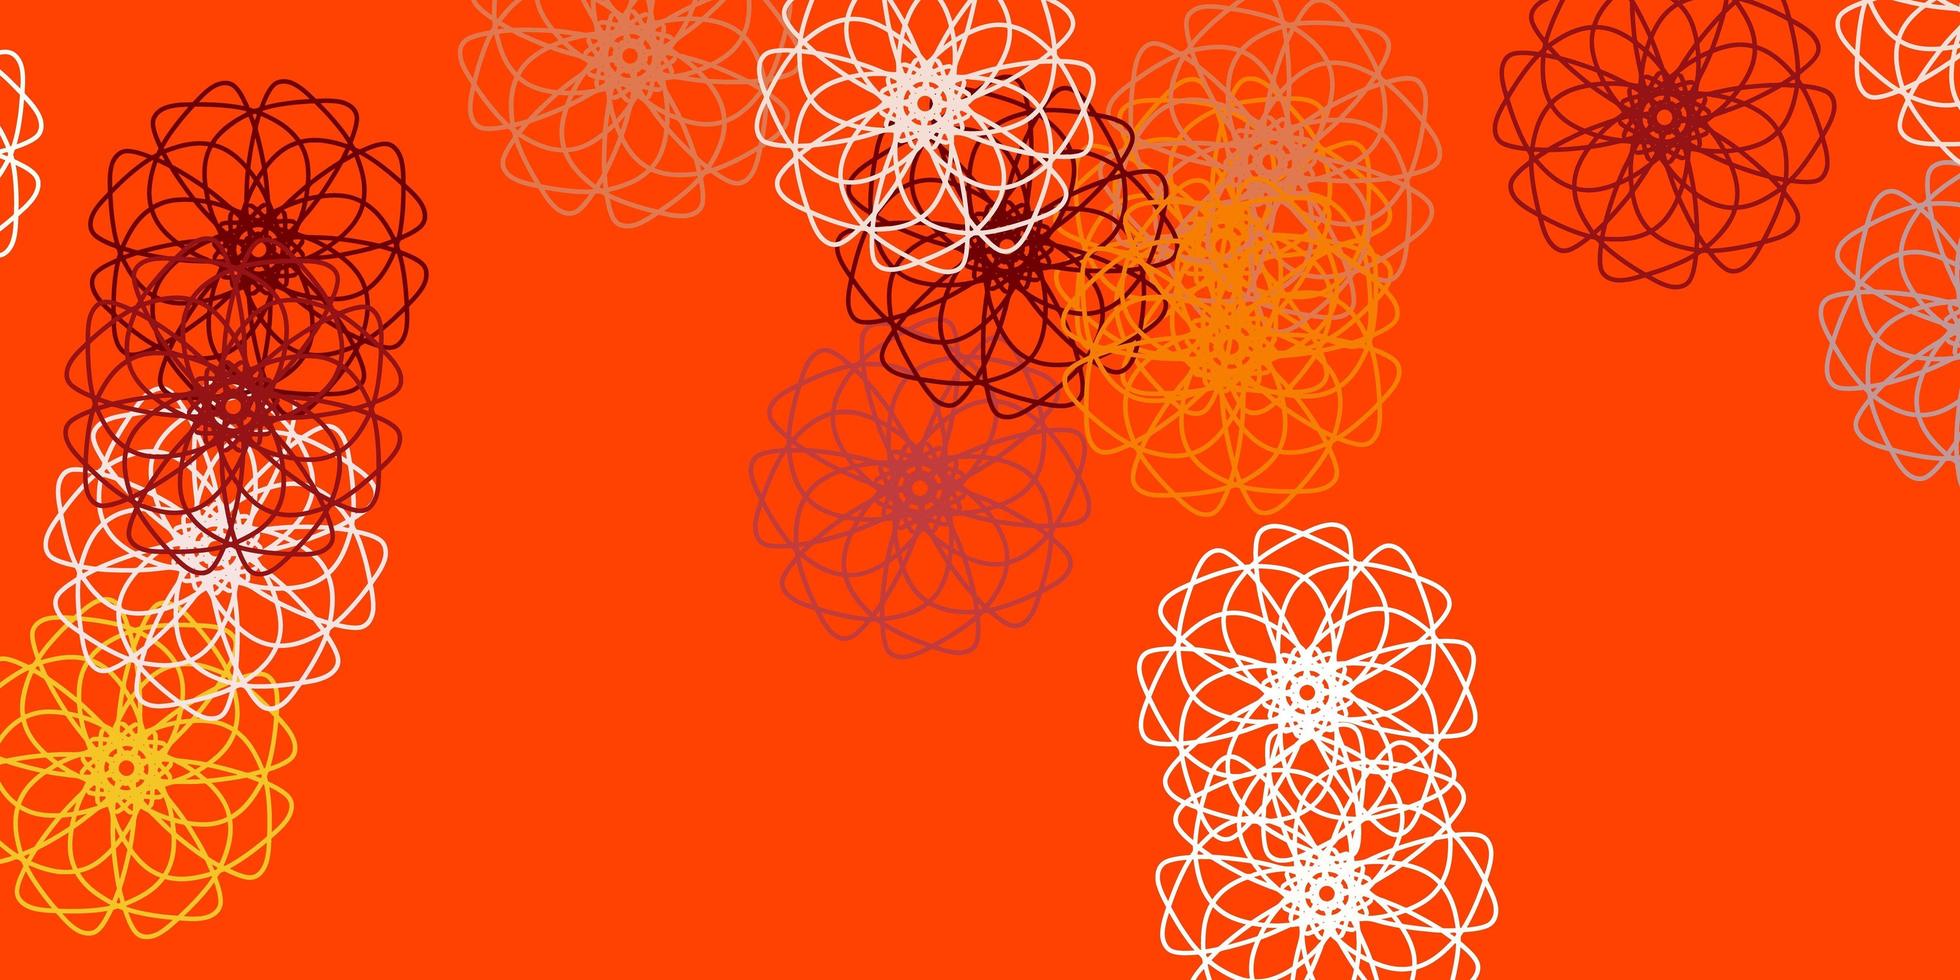 trama di doodle vettoriale arancione chiaro con fiori